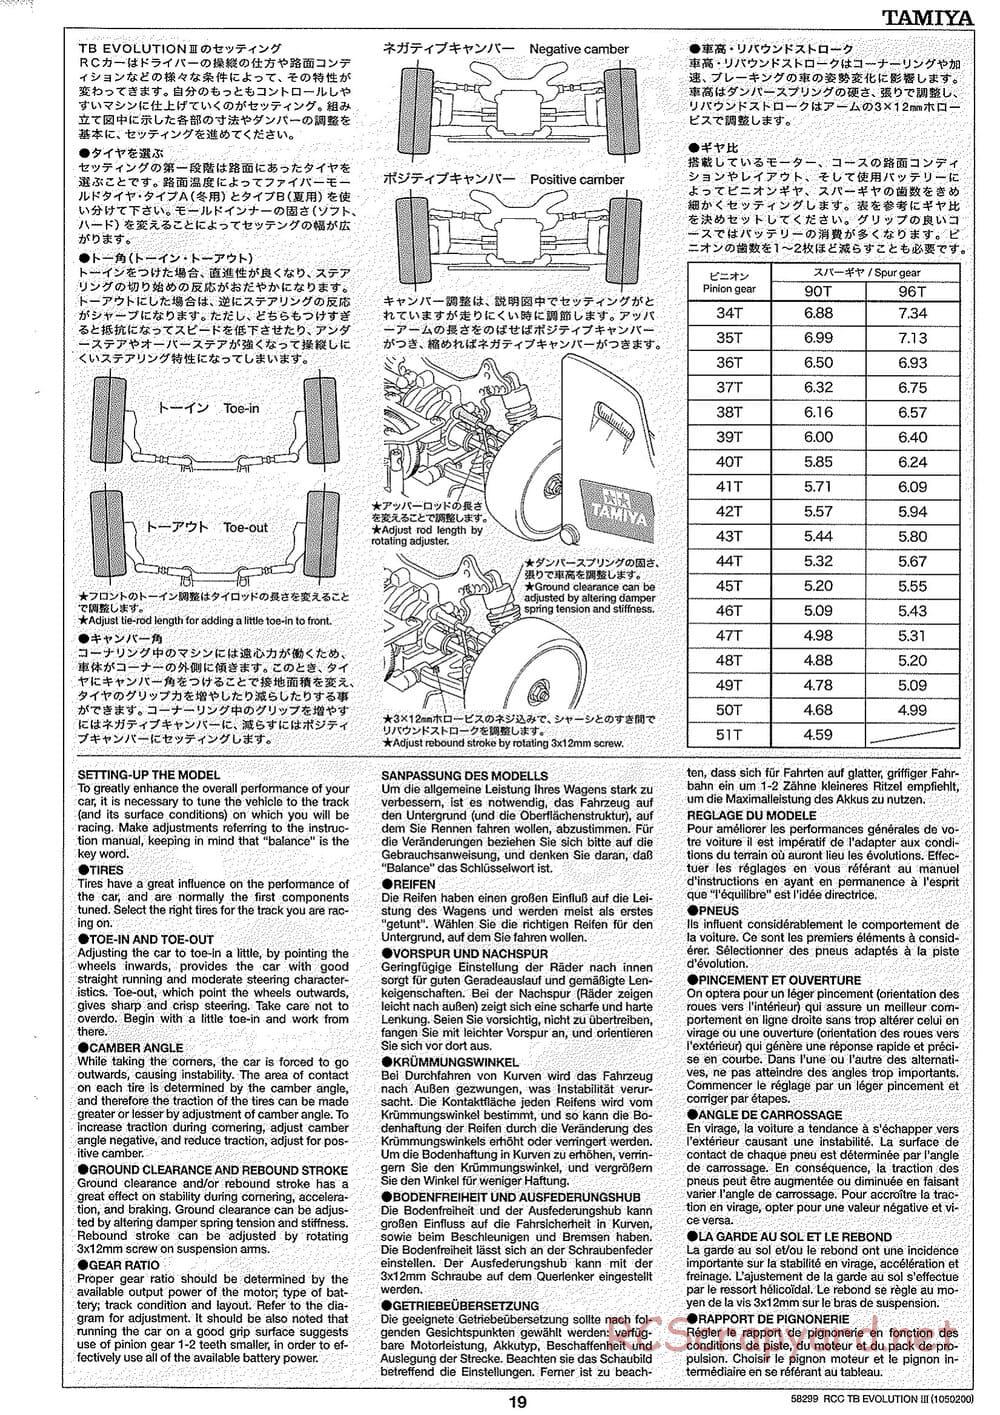 Tamiya - TB Evolution III Chassis - Manual - Page 20